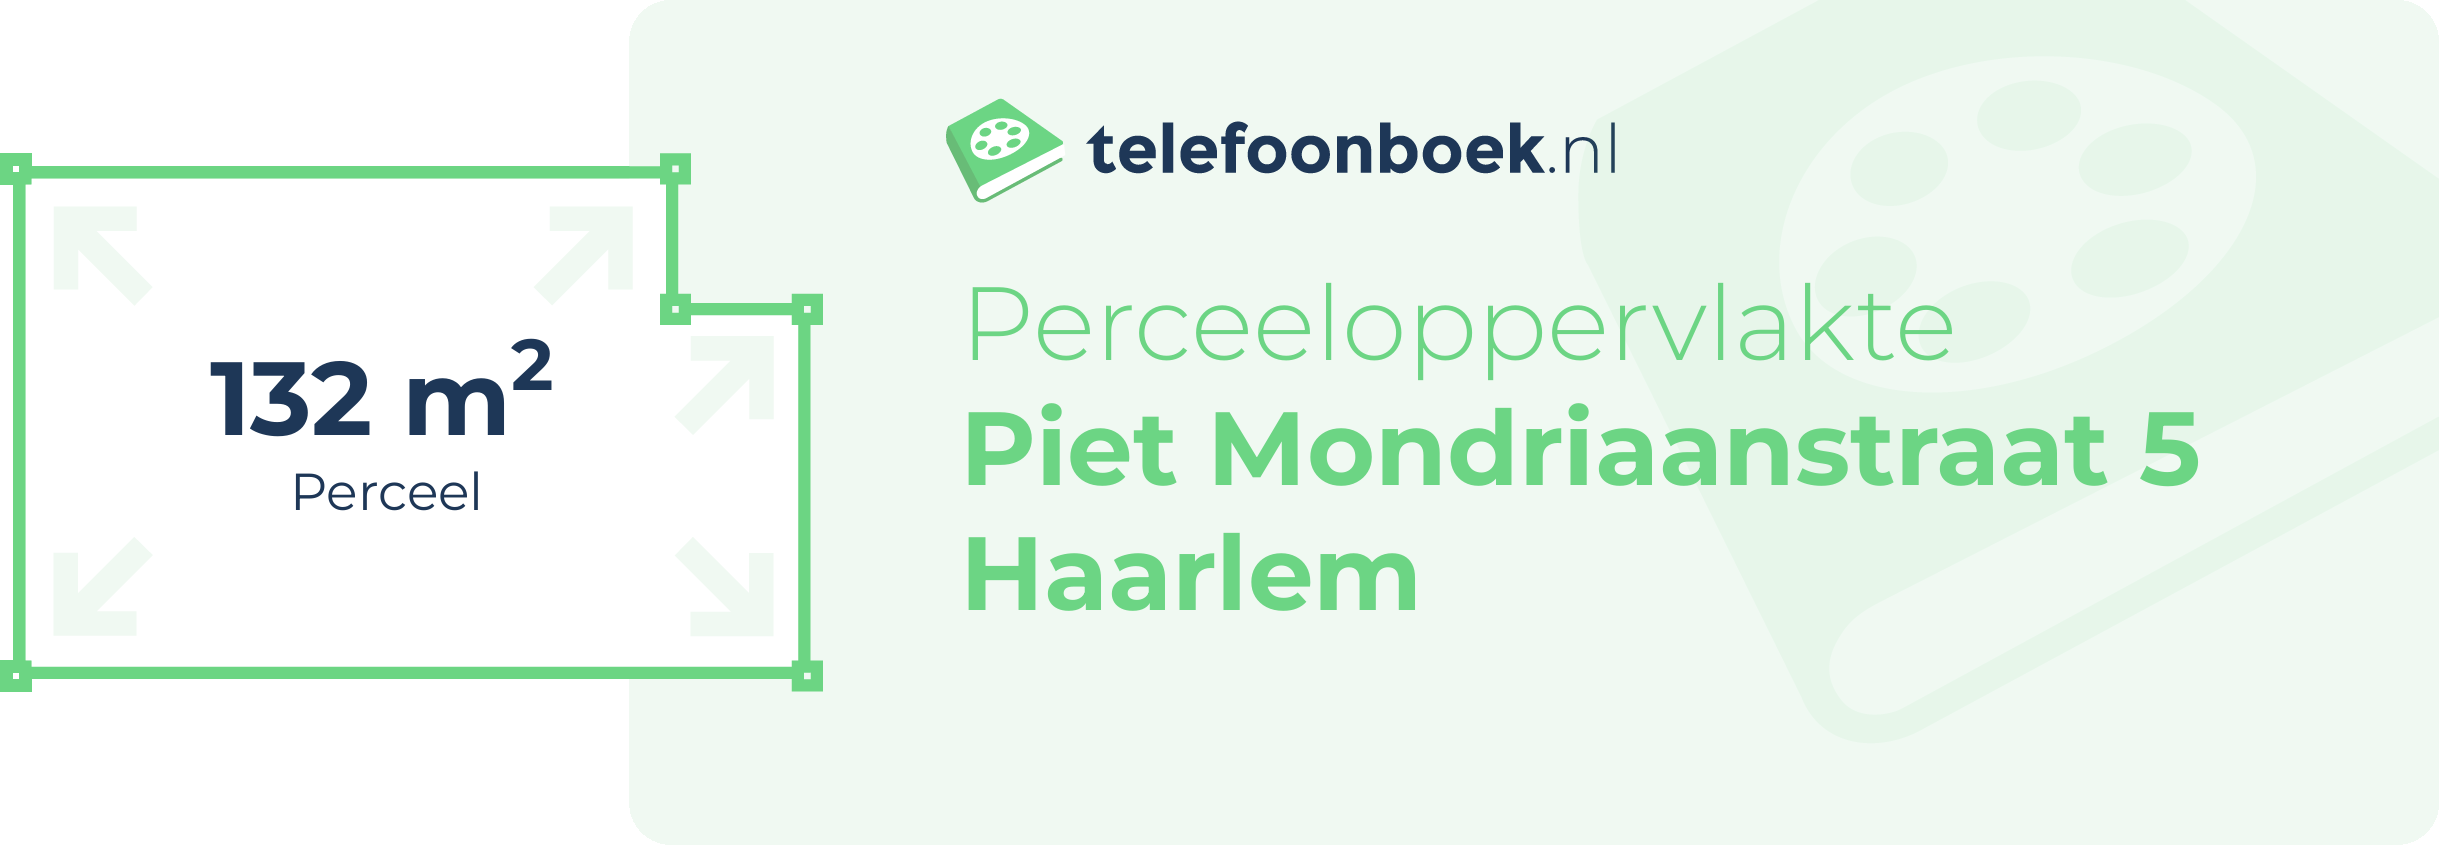 Perceeloppervlakte Piet Mondriaanstraat 5 Haarlem